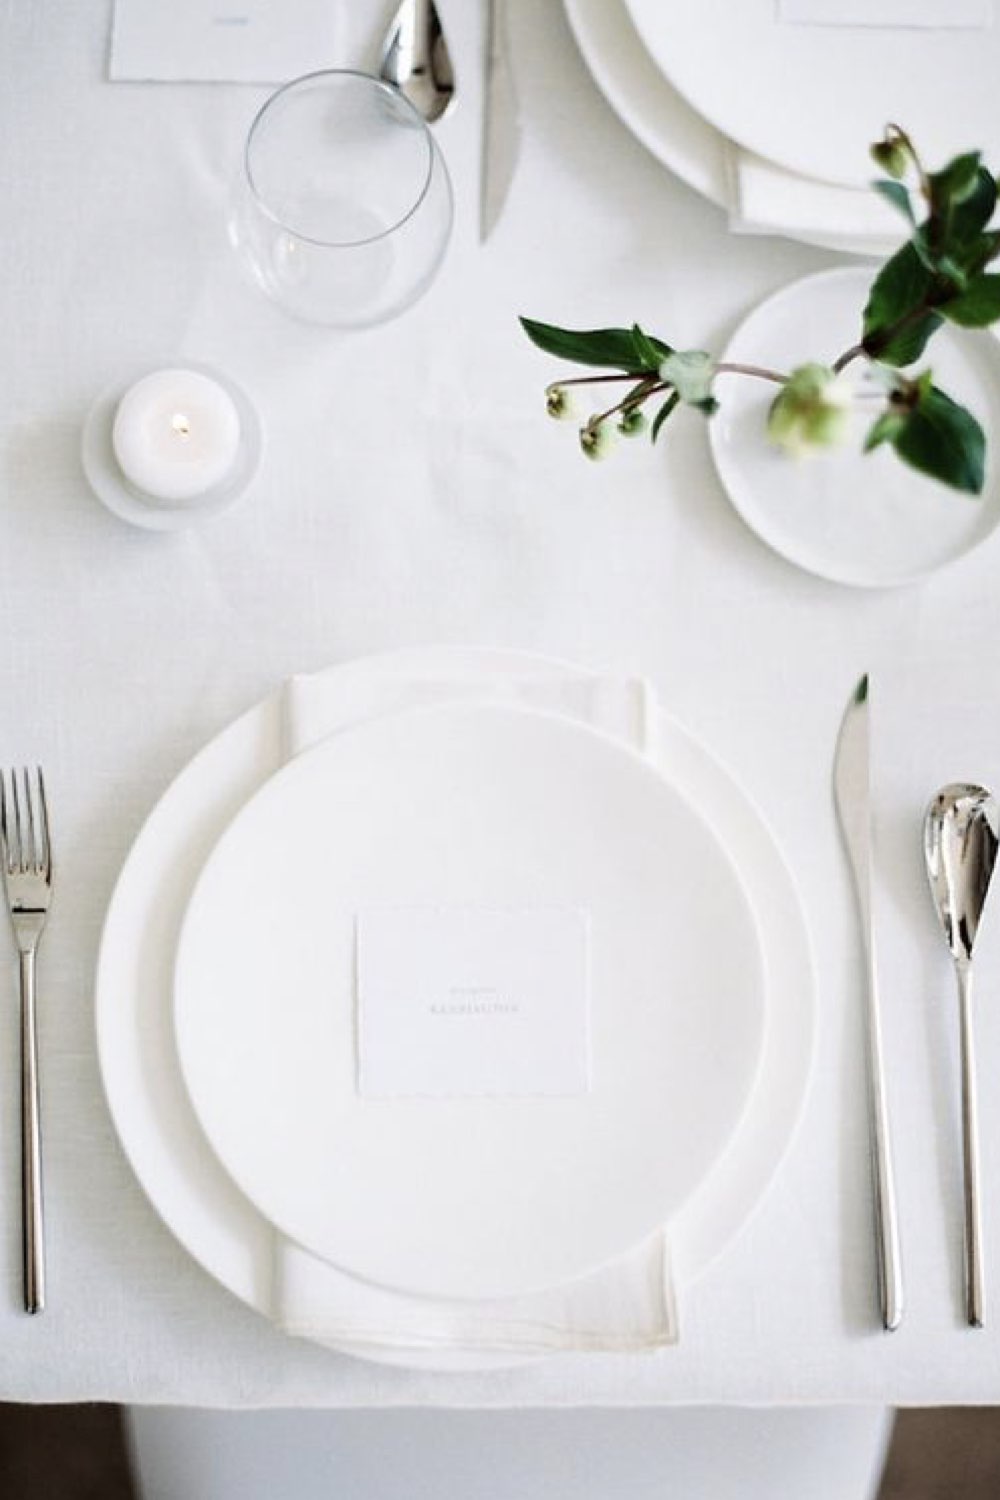 decoration mariage simple minimal chic blanc ton sur ton assiette nappe bougie petite touche naturelle fleur soliflore couvert chromé